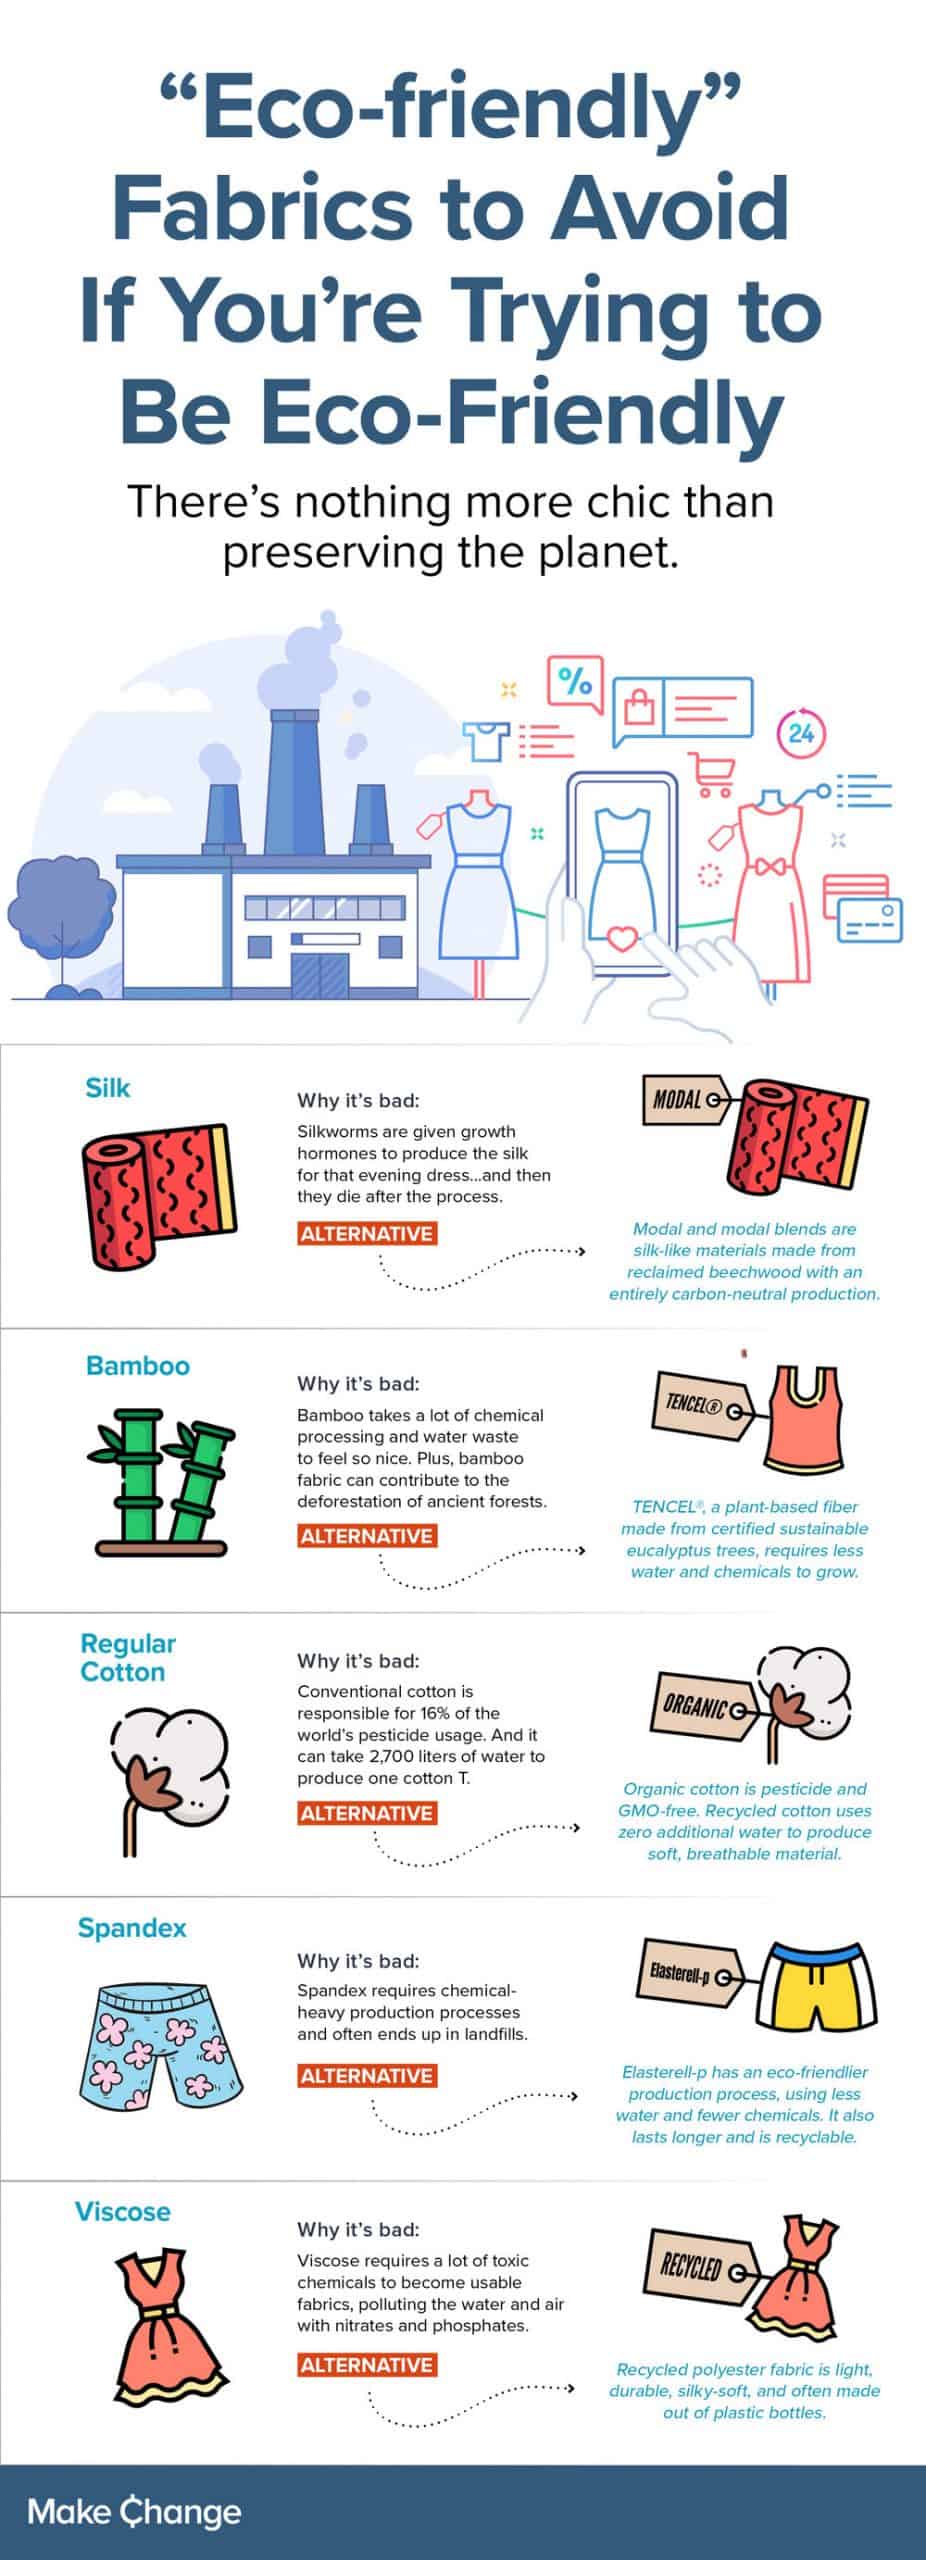 ecofabric-makechange-infographic